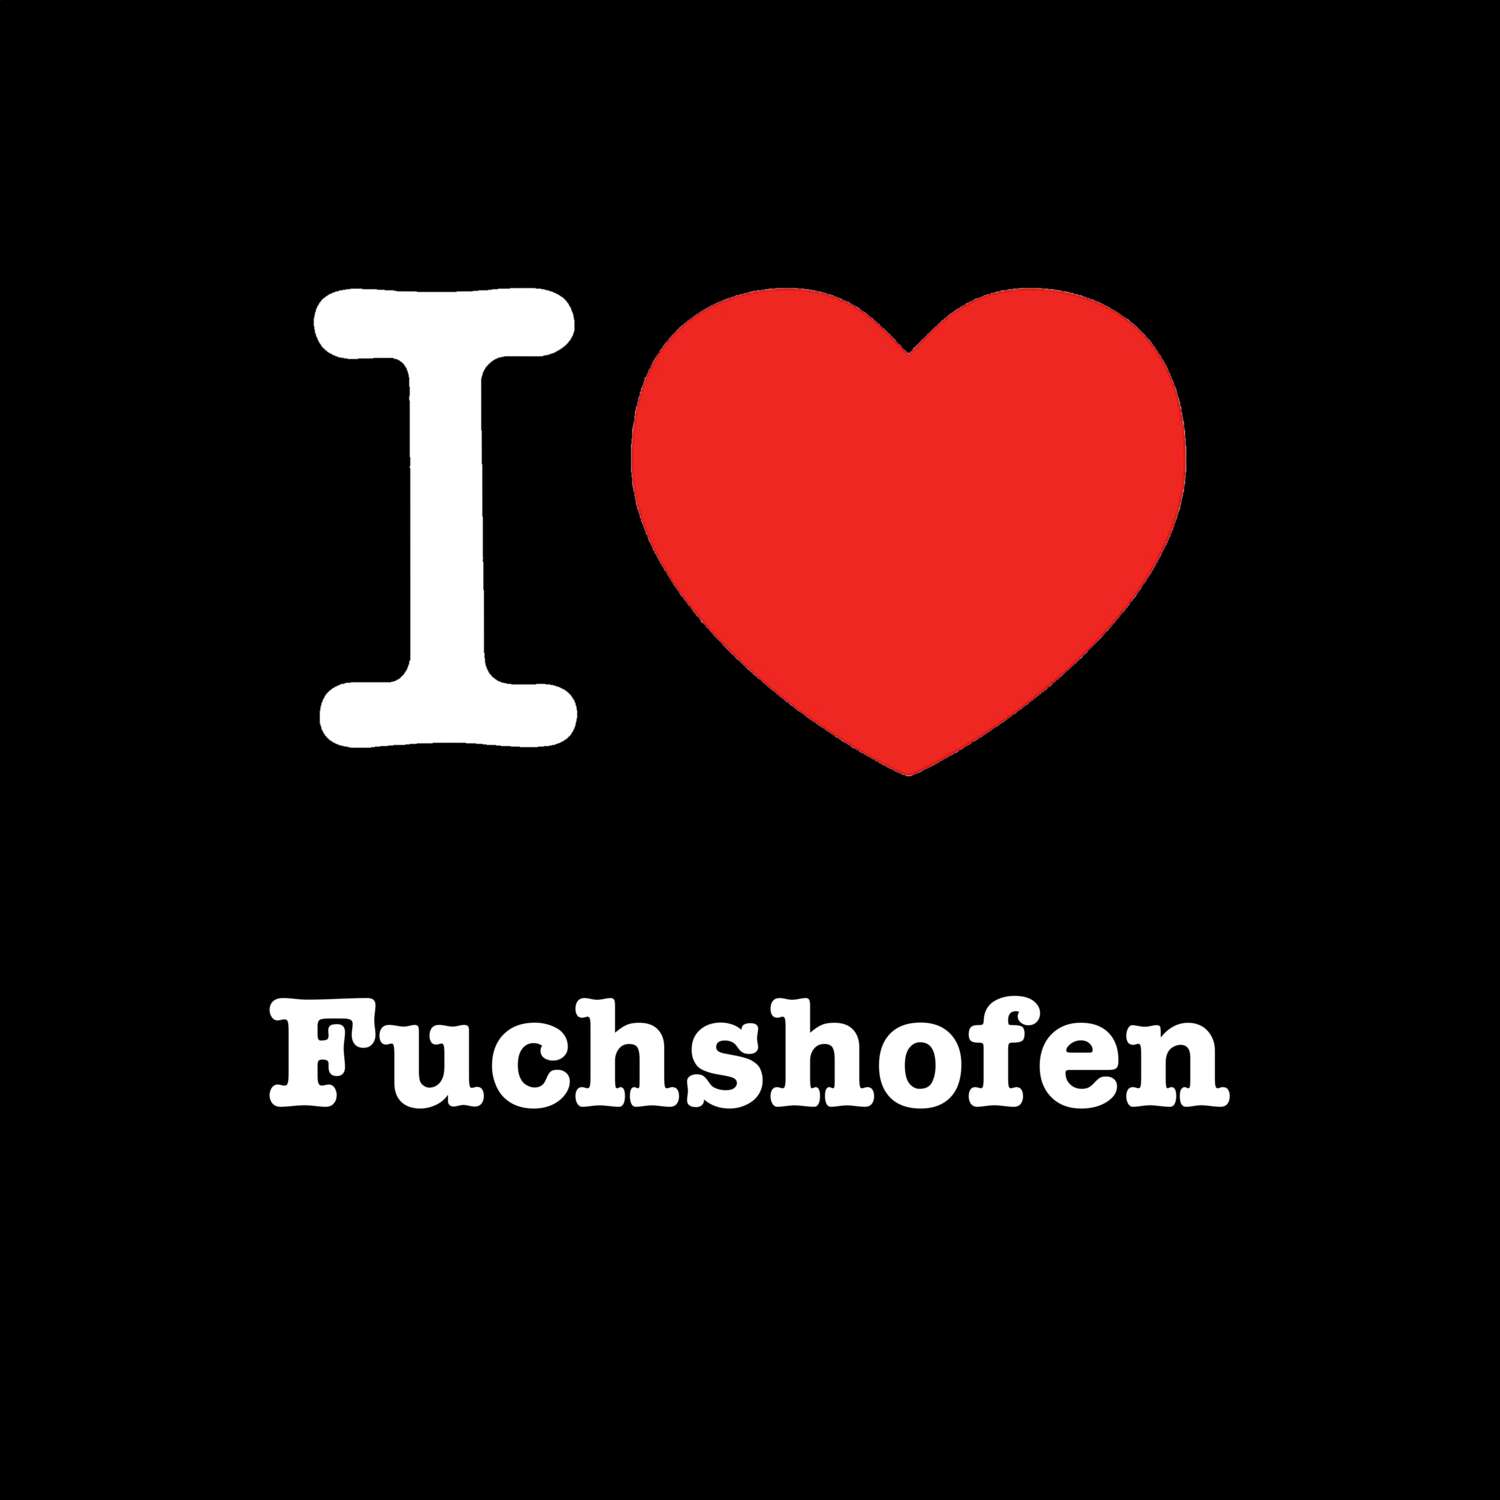 Fuchshofen T-Shirt »I love«